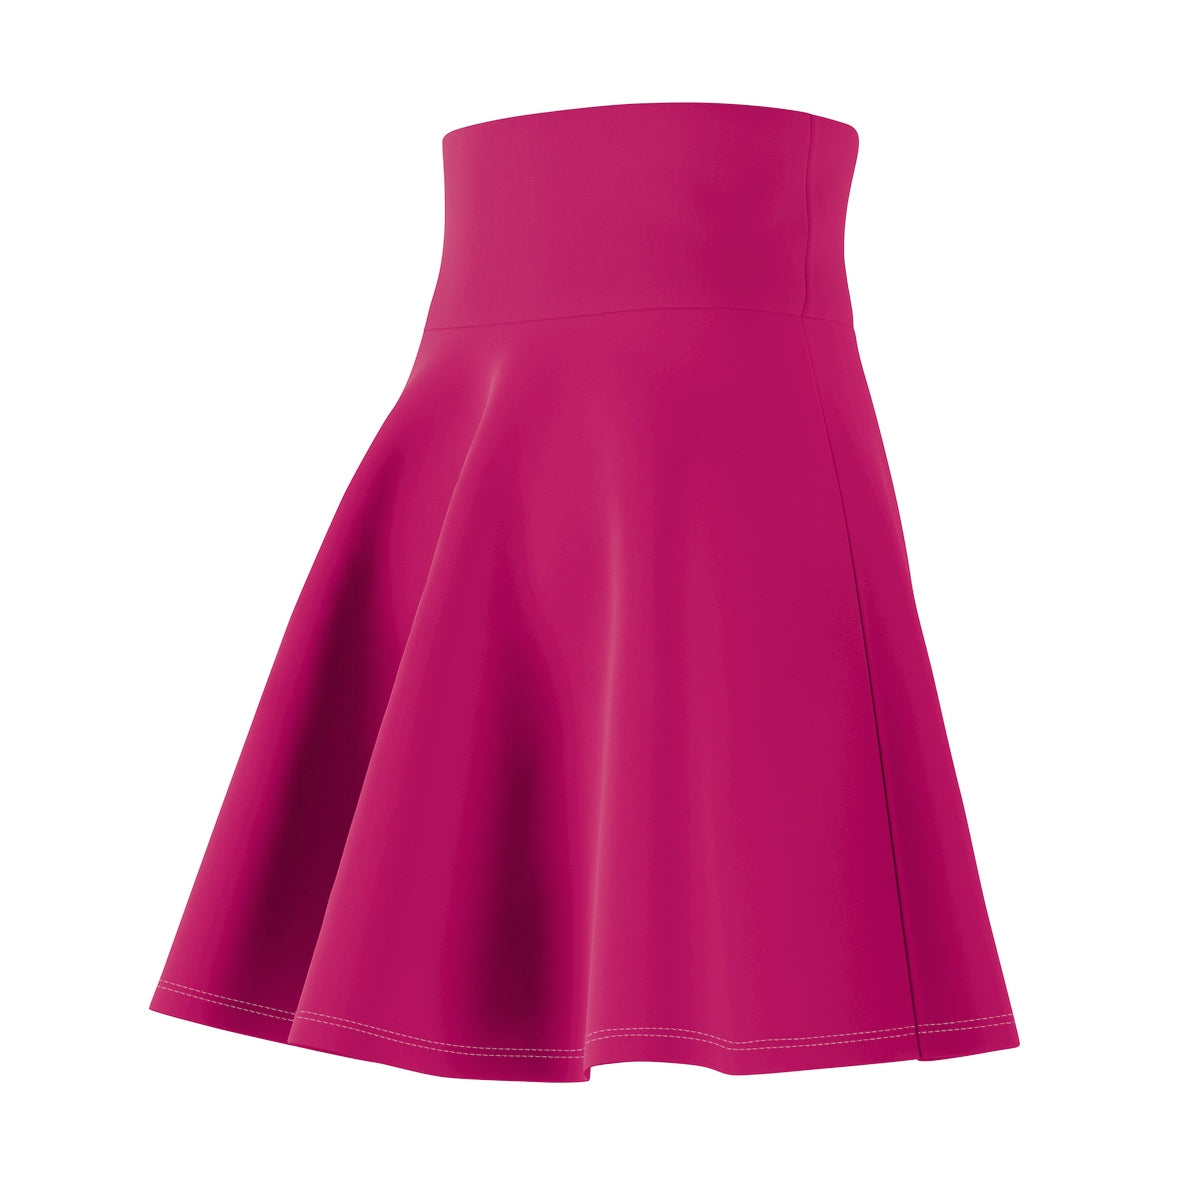 Pink Raspberry Skater Skirt